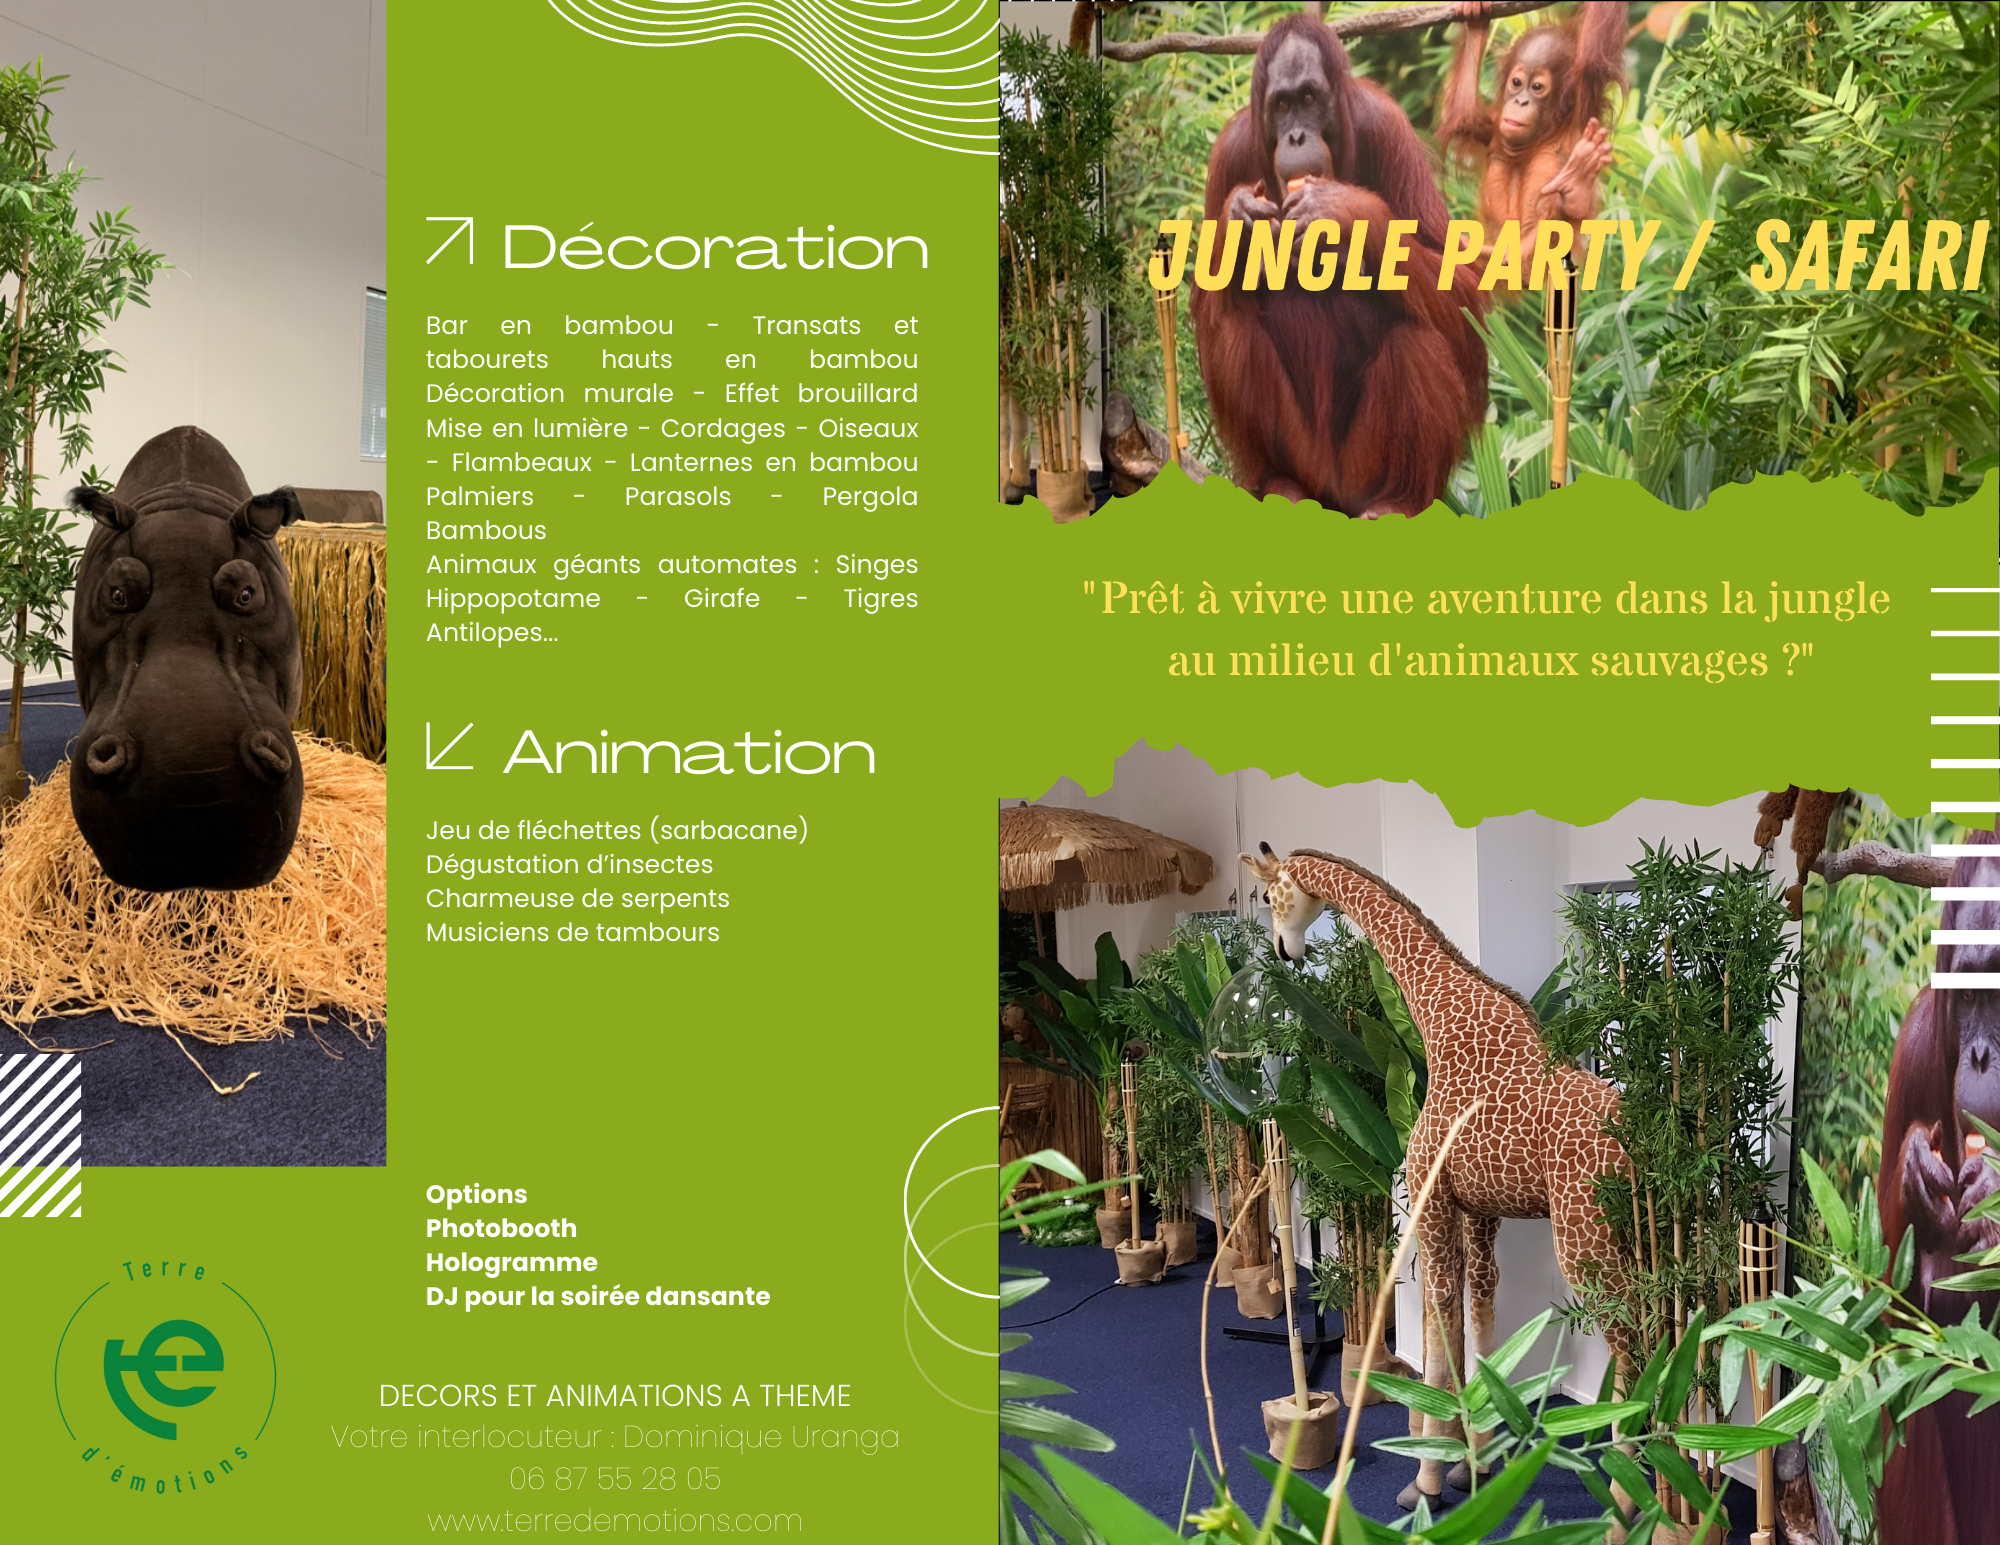 décors, scénographie et animations thème jungle party safari